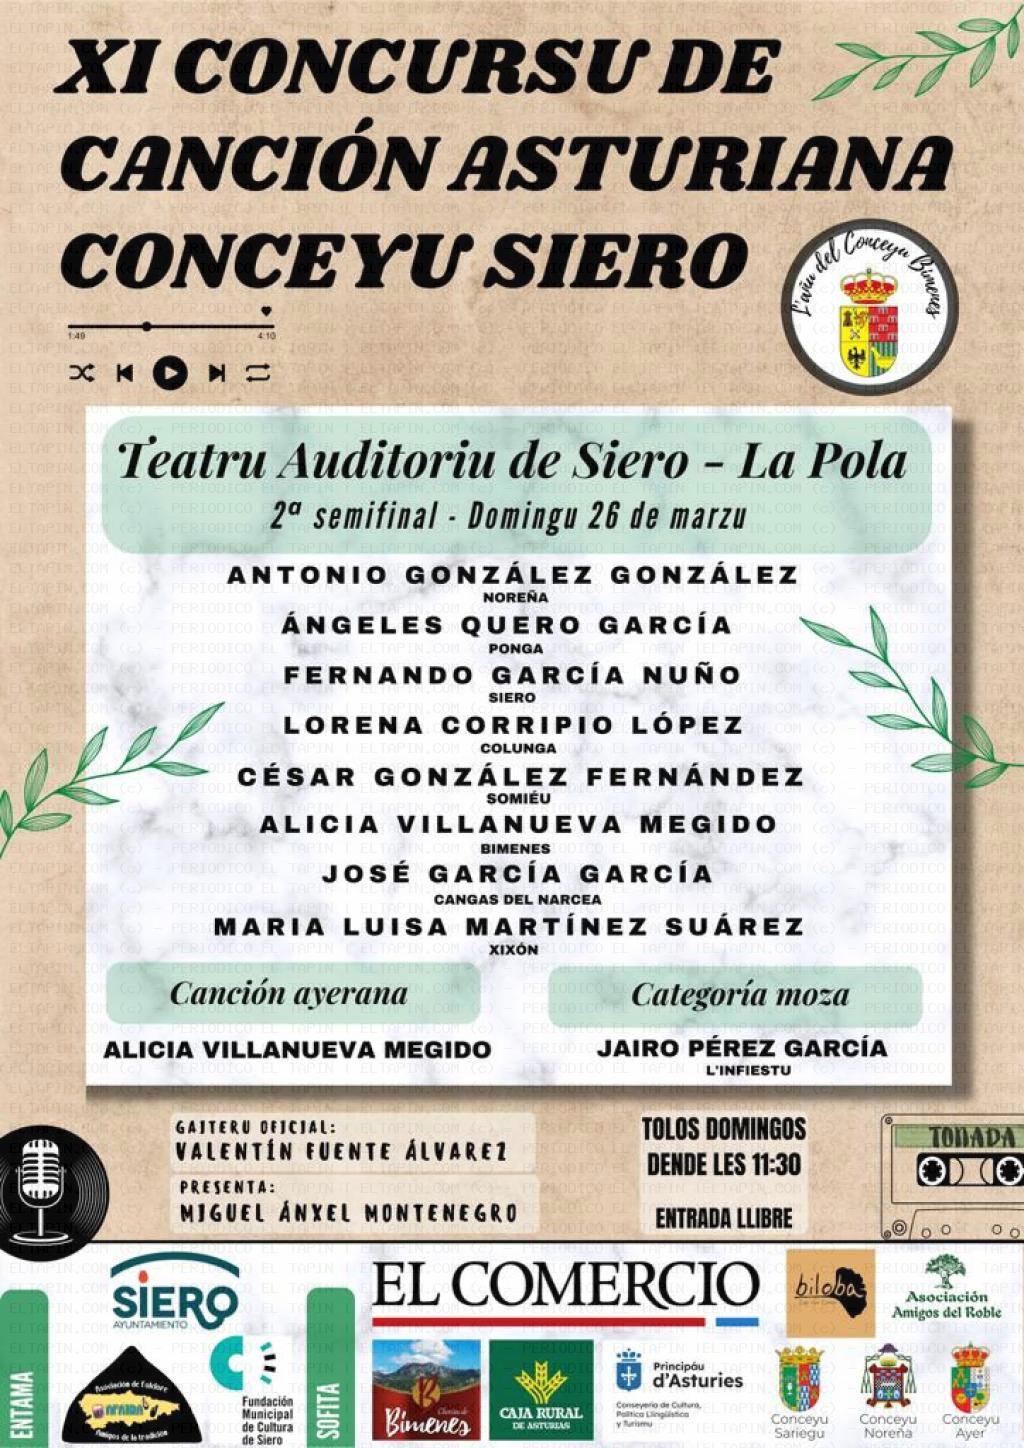 El Tapin - La 2º Semifinal del XI Concursu de Canción Asturiana Conceyu Siero se celebrará el domingo 26 de marzo 